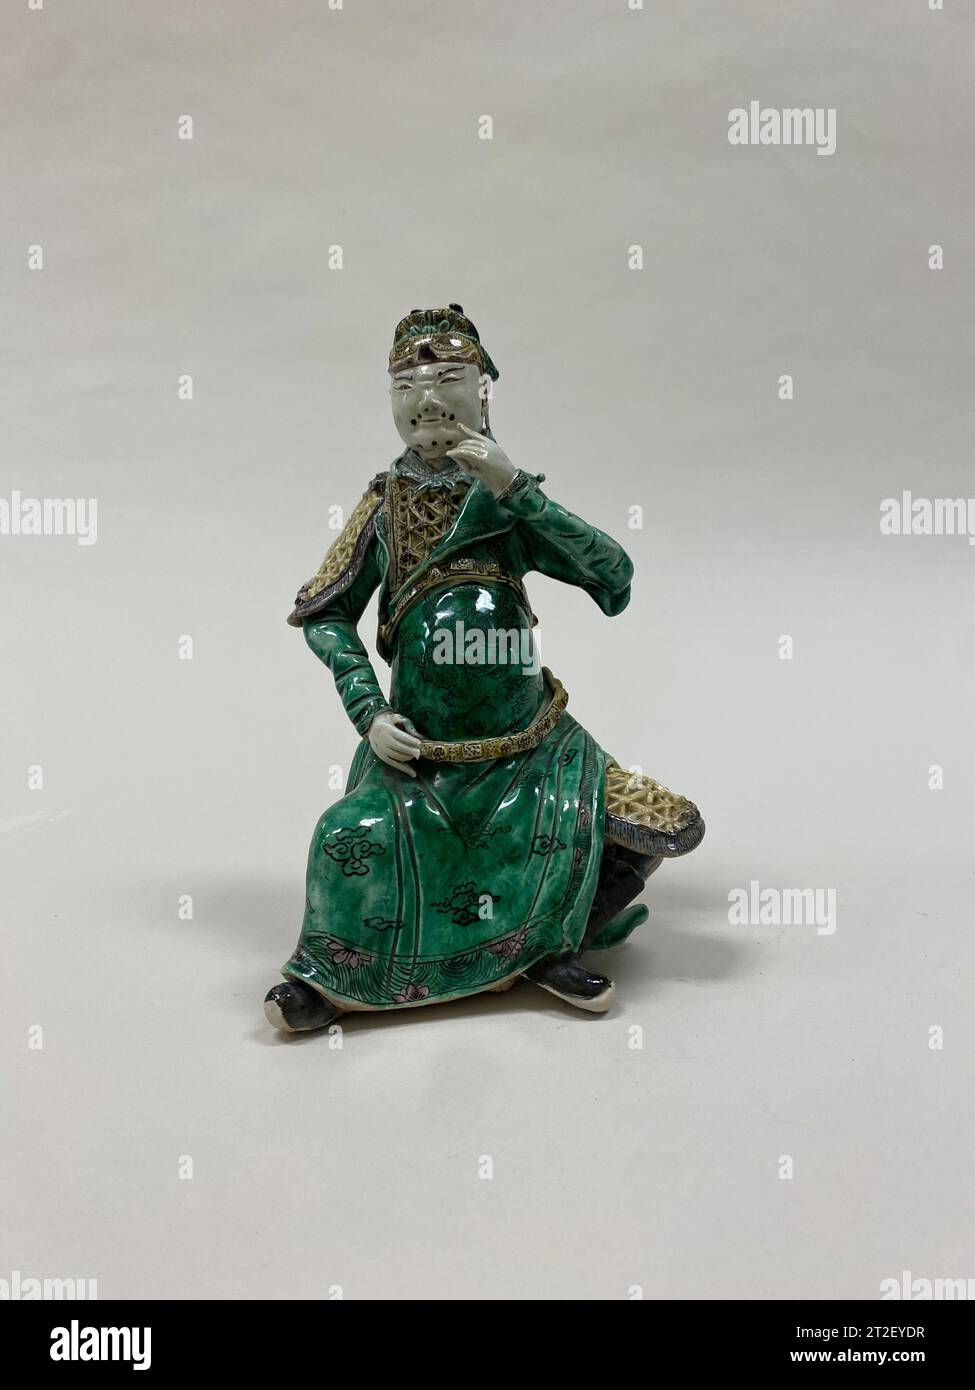 Figure de Guan Yu, une divinité gardienne Chine 19e siècle Voir plus. Figure de Guan Yu, une divinité gardienne. Chine. 19e siècle. Biscuit aux émaux polychromes (Jingdezhen ware). Dynastie Qing (1644-1911). Céramique Banque D'Images